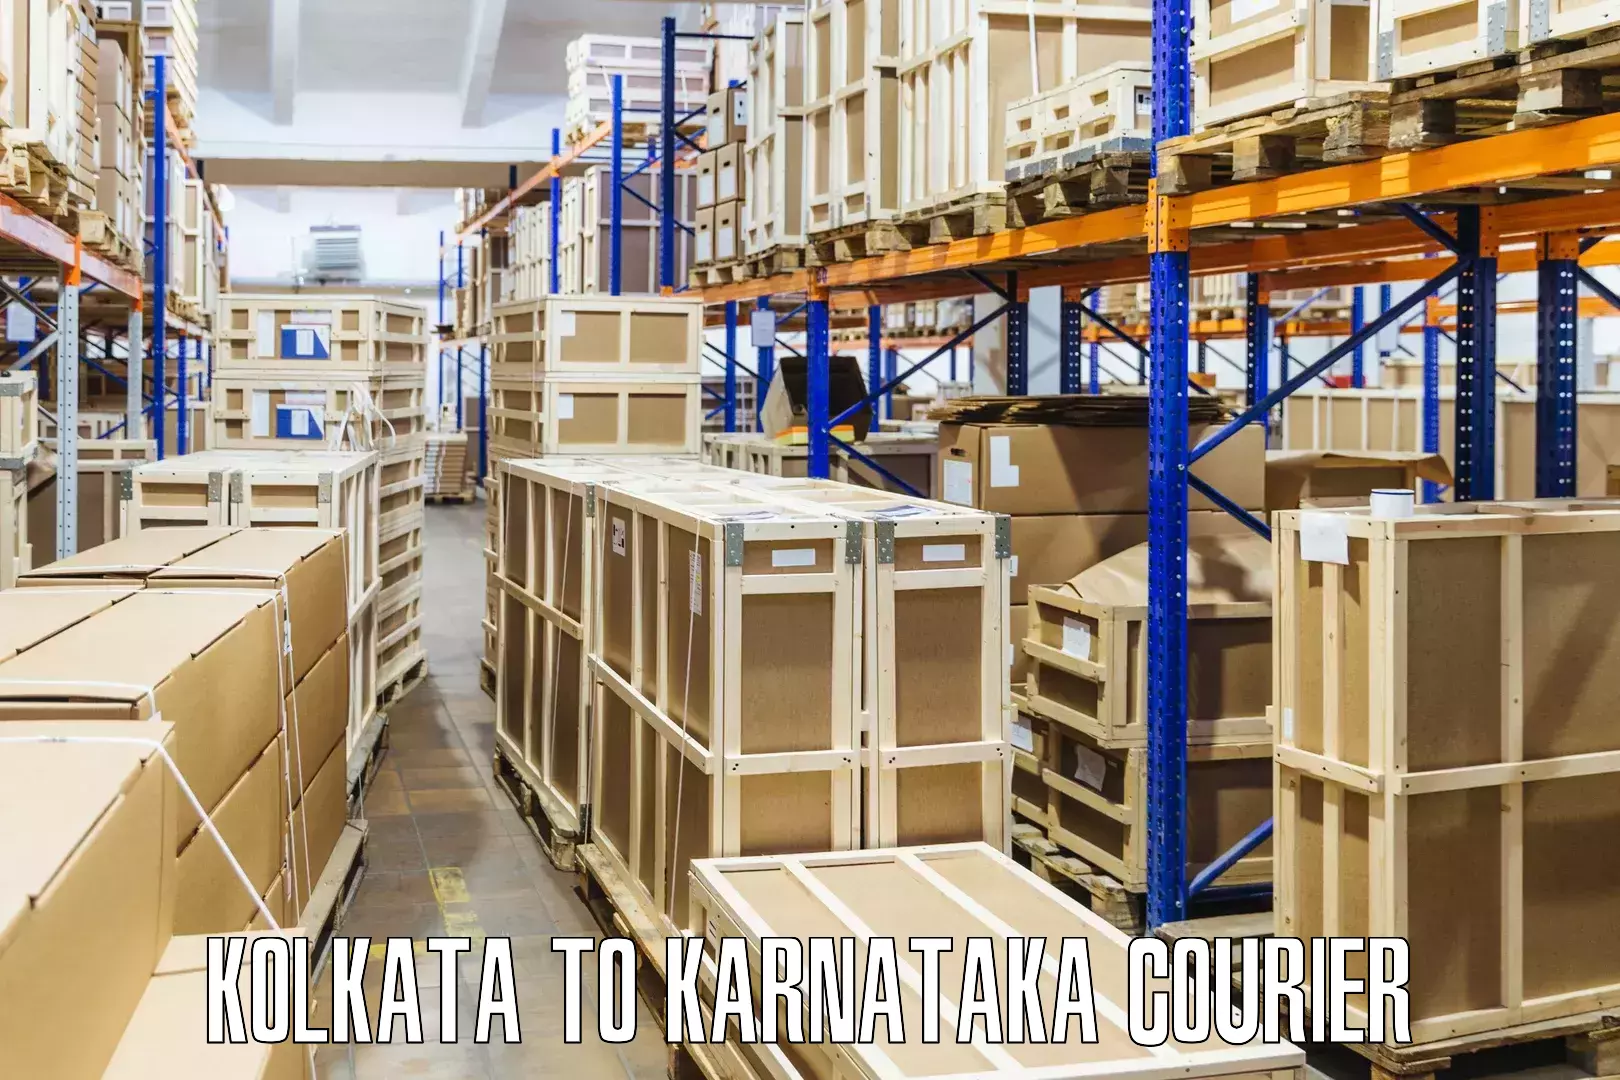 Efficient shipping operations Kolkata to Karnataka